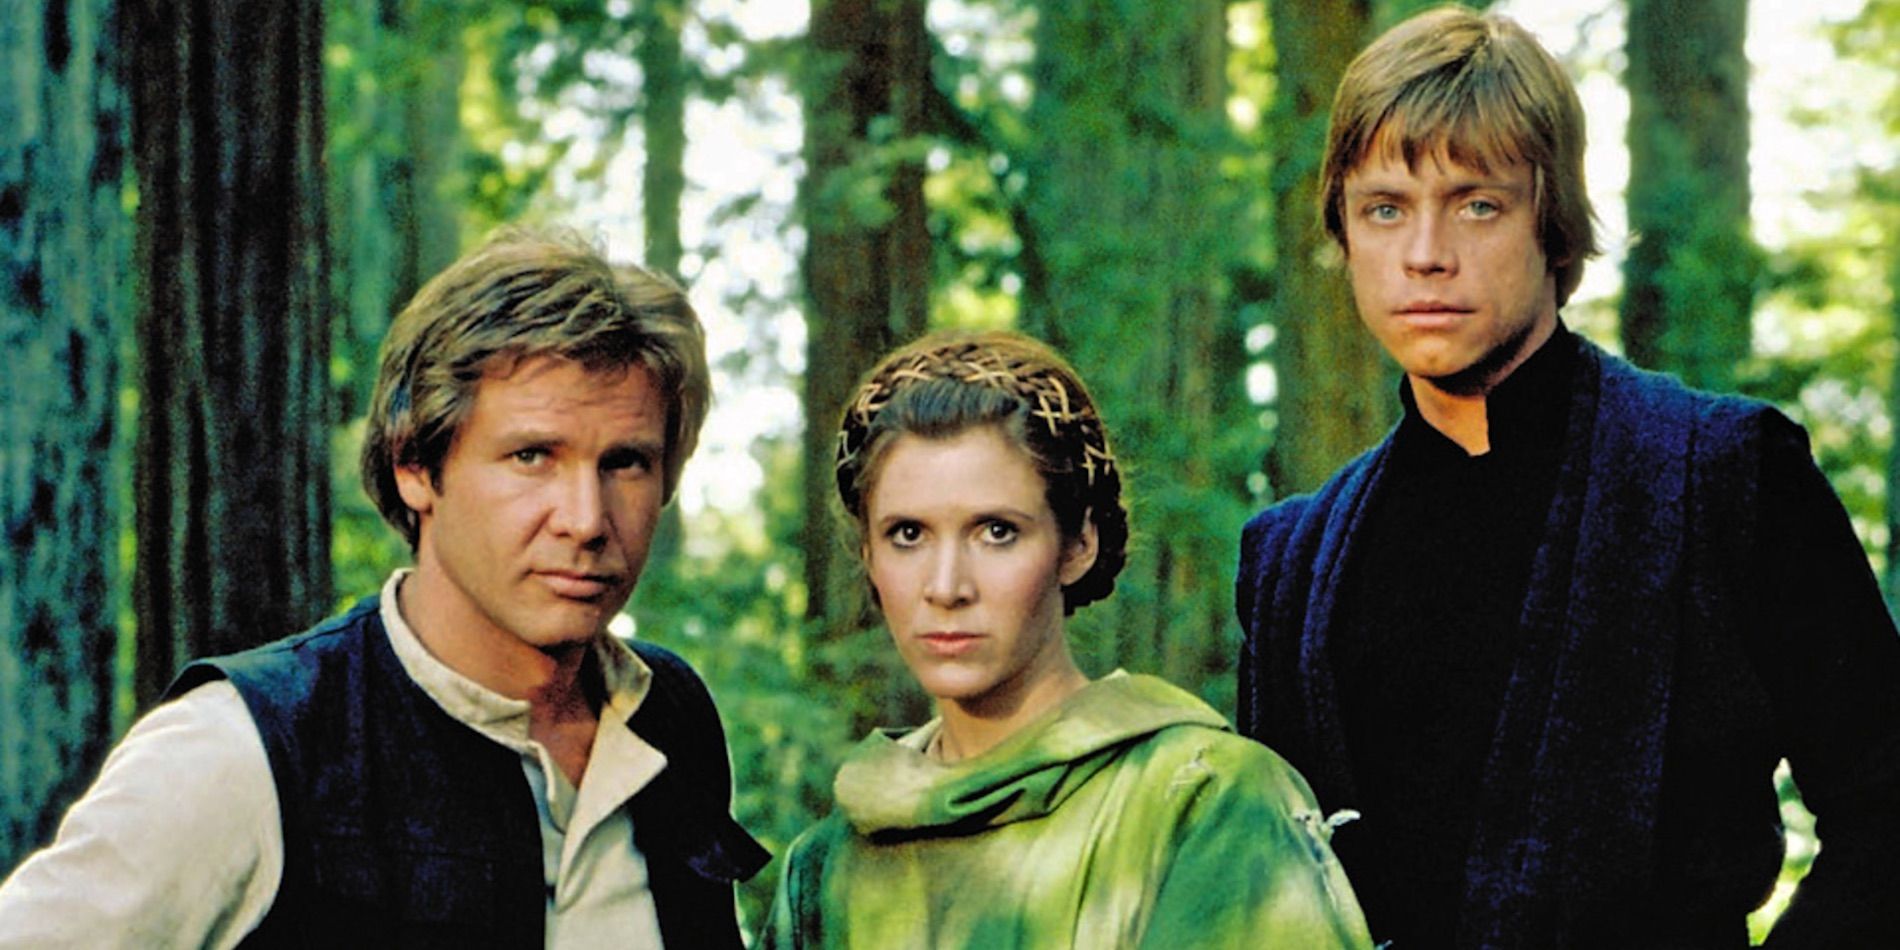 Han Solo Leia and Luke Skywalker in Star Wars Return of the Jedi